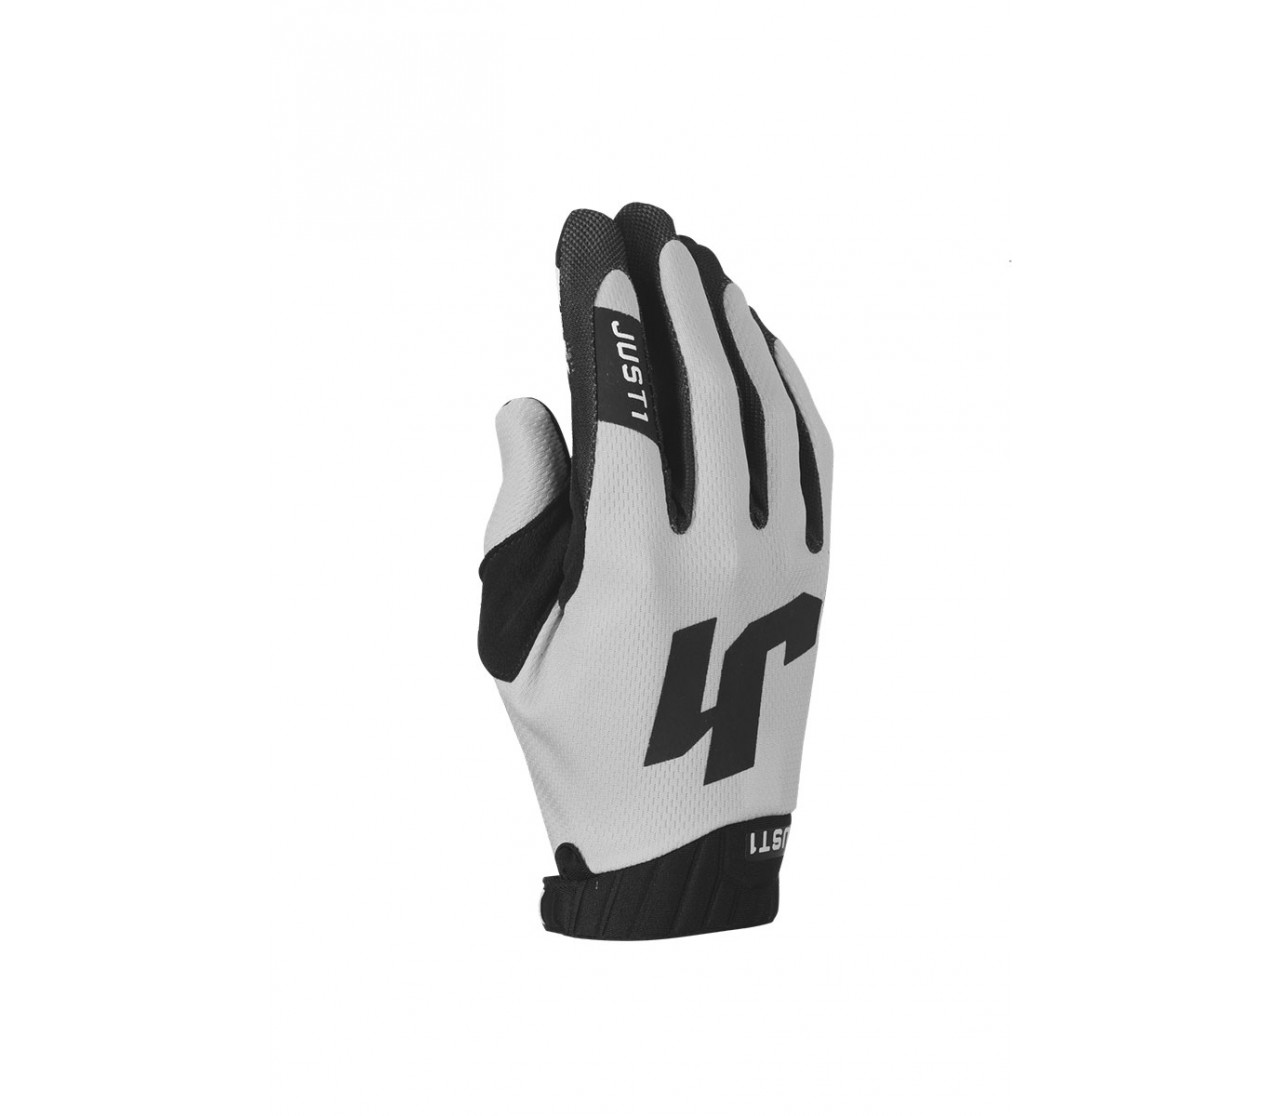 Gloves J-Flex 2.0 White